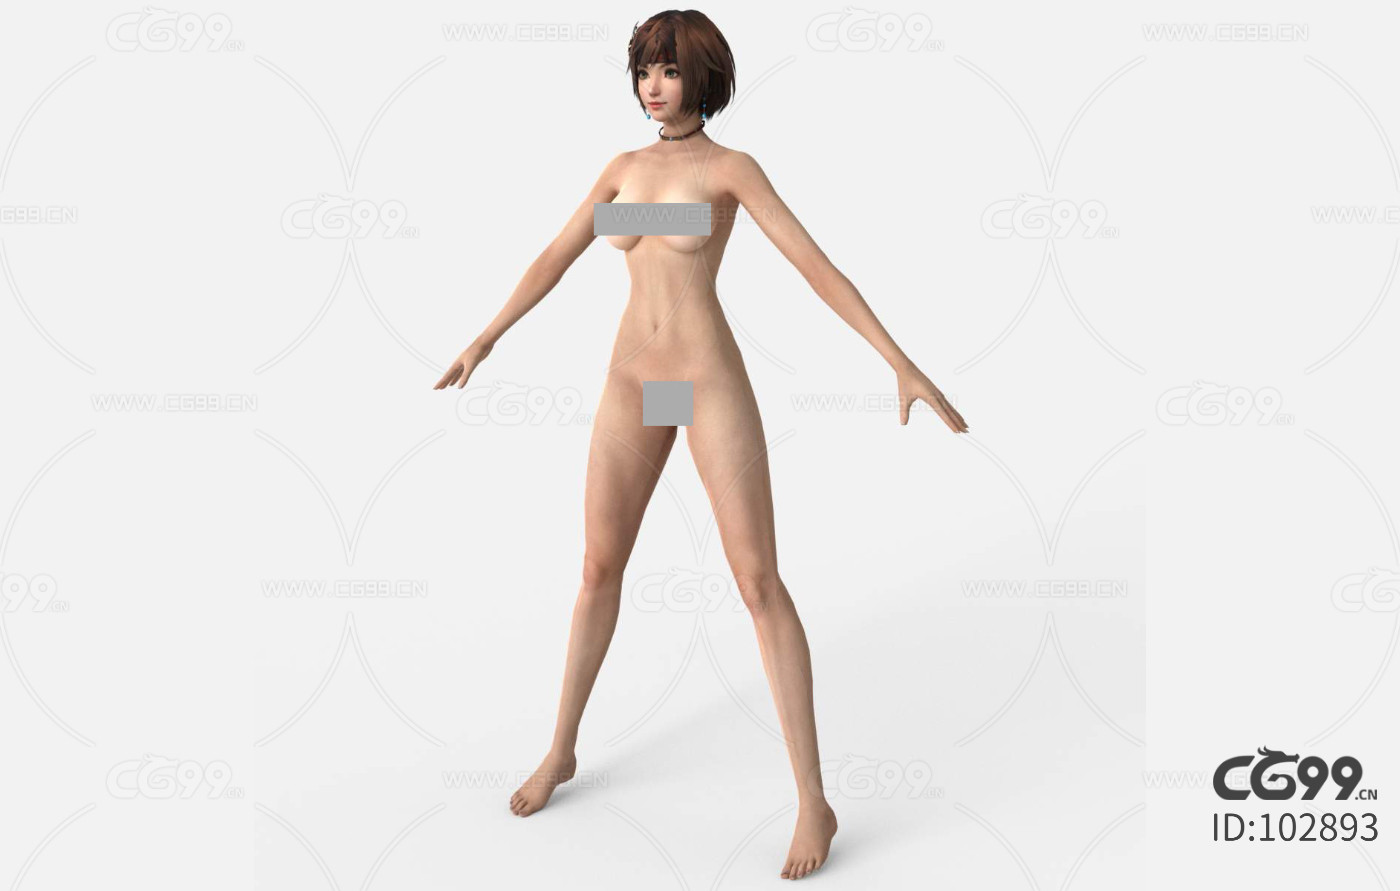 本模型所属分类为 "人物-美女",作品主题为女孩 人体 裸体